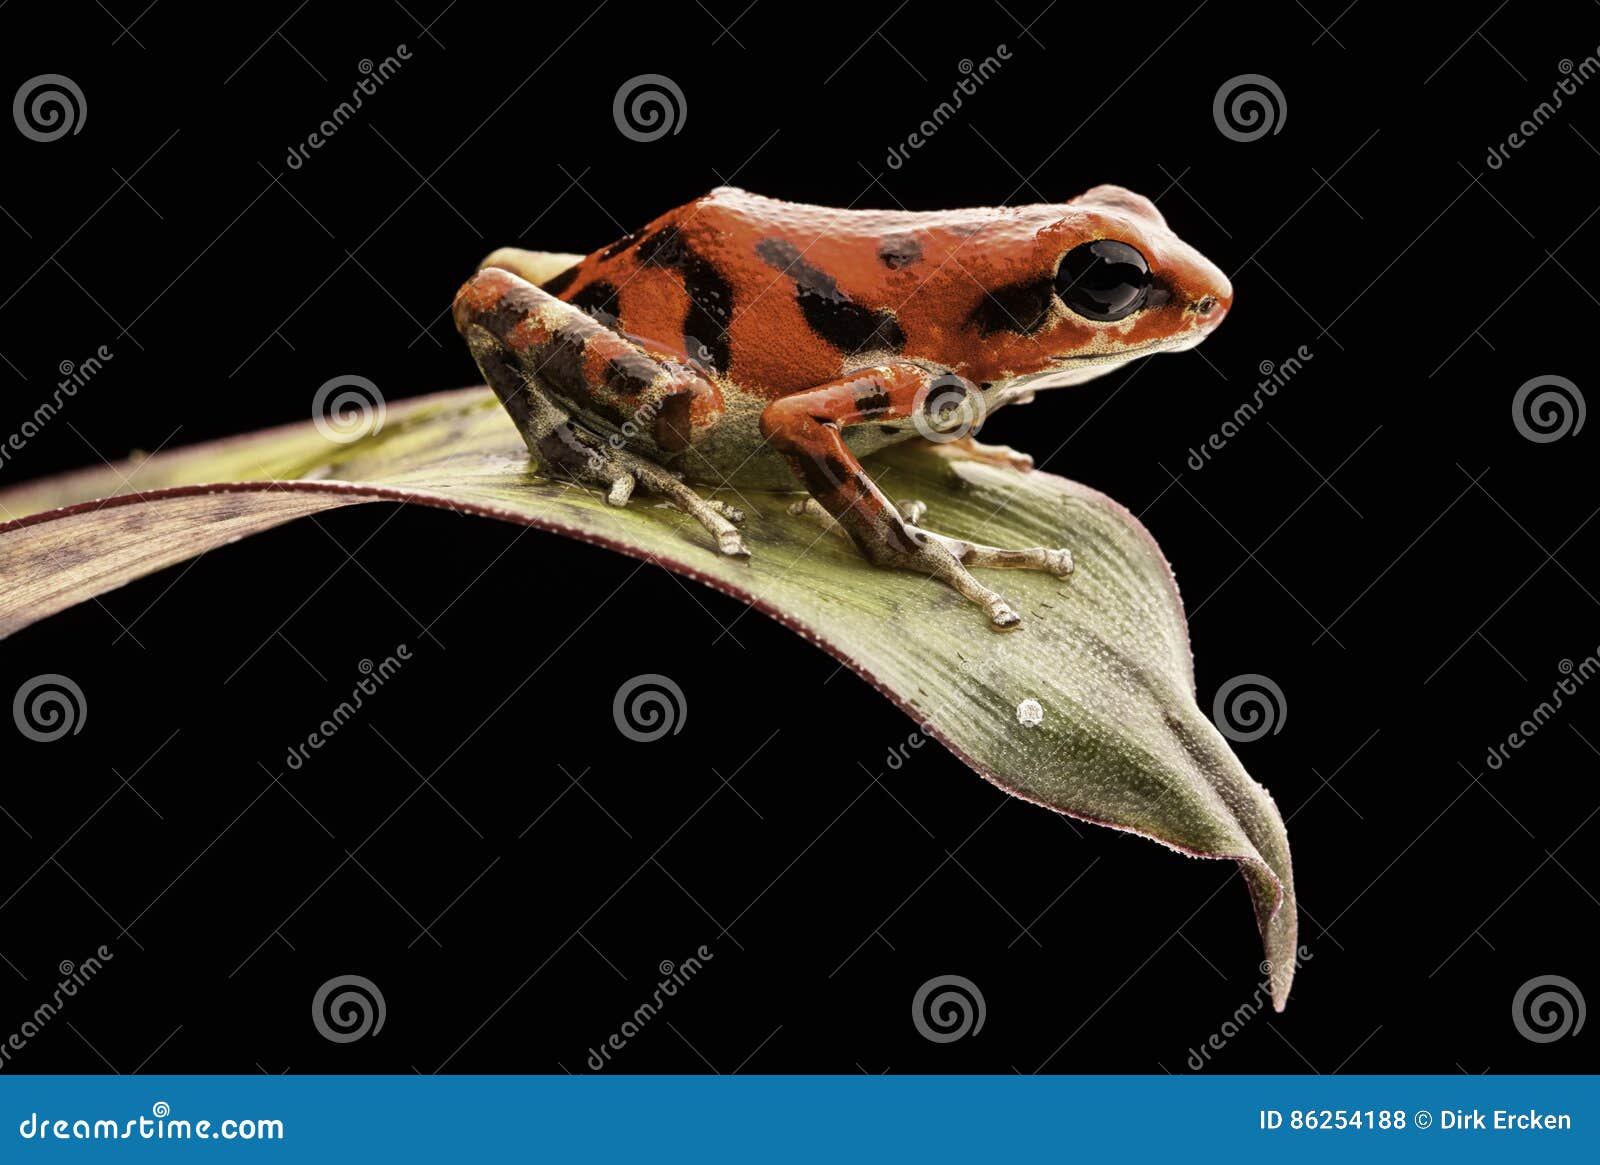 red poison dart frog oophaga pumilio